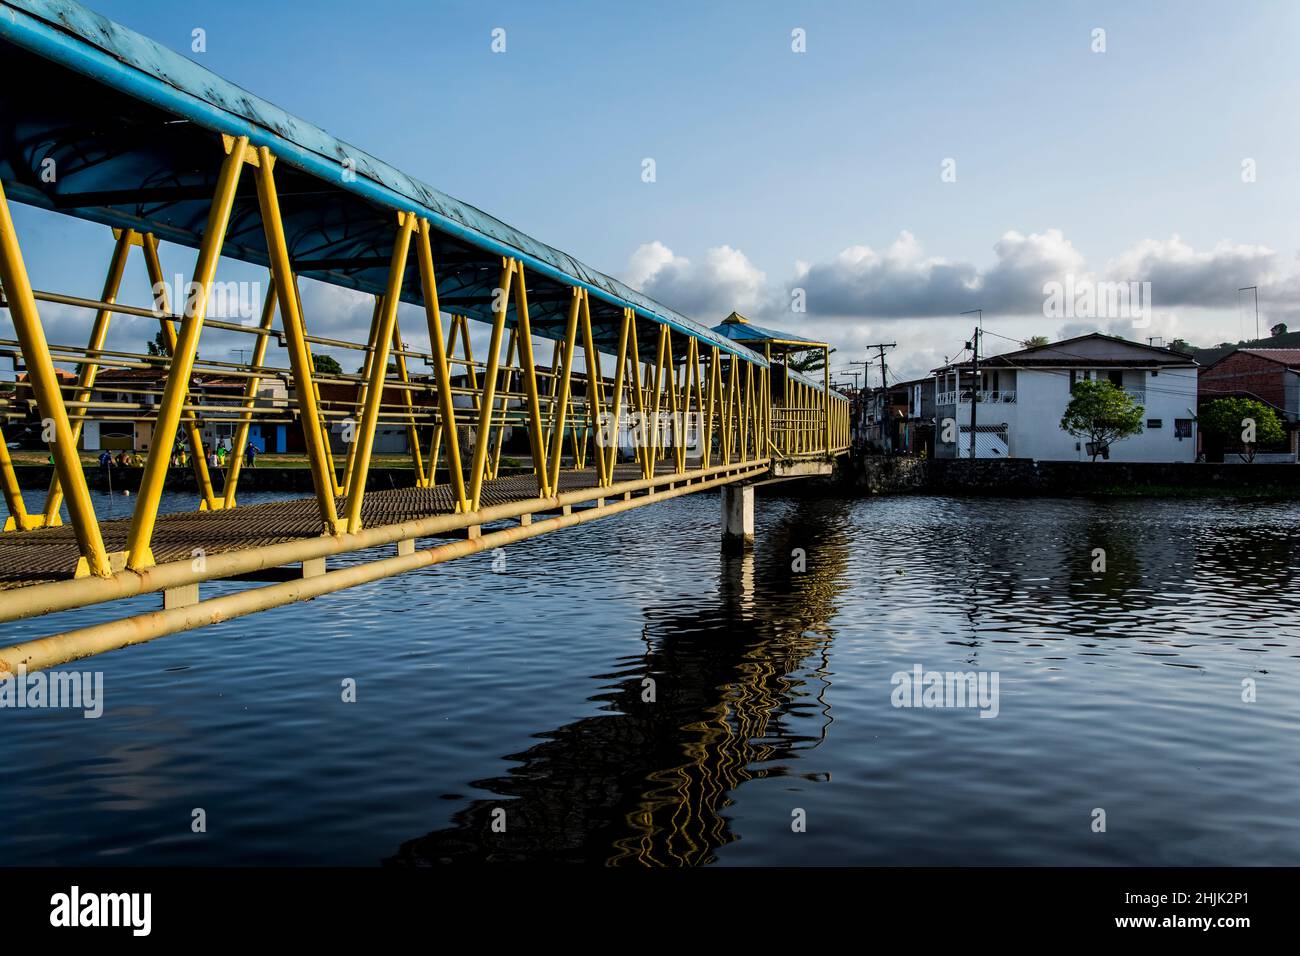 Pasarela peatonal de hierro sobre un río en colores amarillo y azul. Reflexión en el agua. Foto de stock